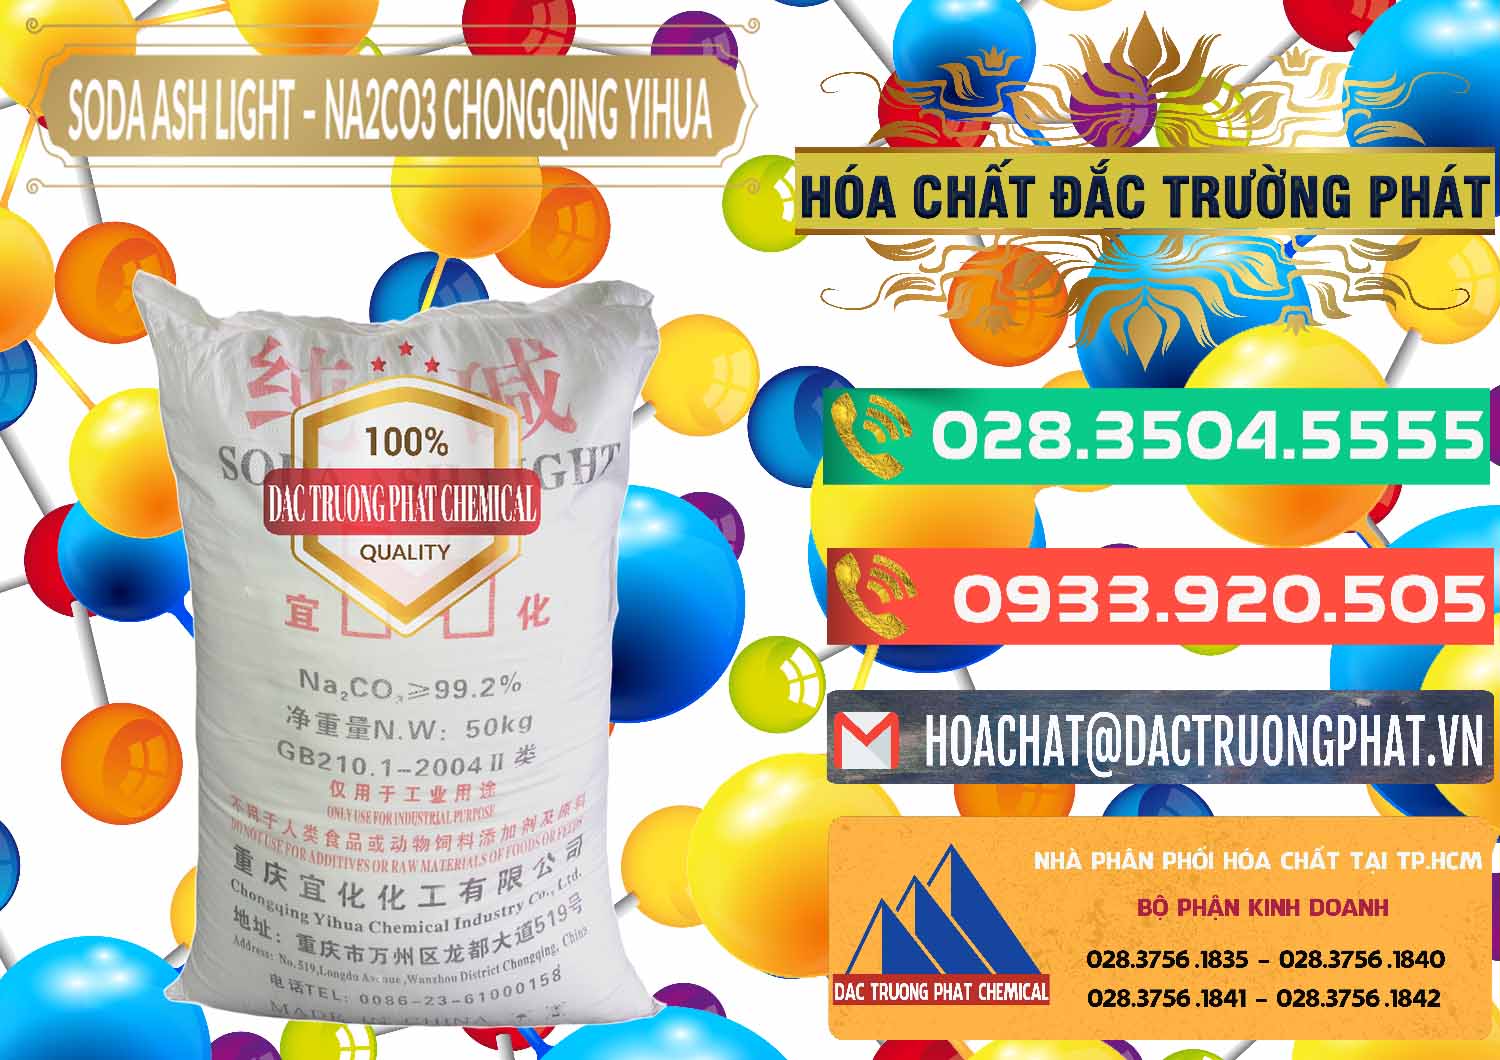 Cty chuyên nhập khẩu _ bán Soda Ash Light - NA2CO3 Chongqing Yihua Trung Quốc China - 0129 - Chuyên bán - cung cấp hóa chất tại TP.HCM - congtyhoachat.com.vn